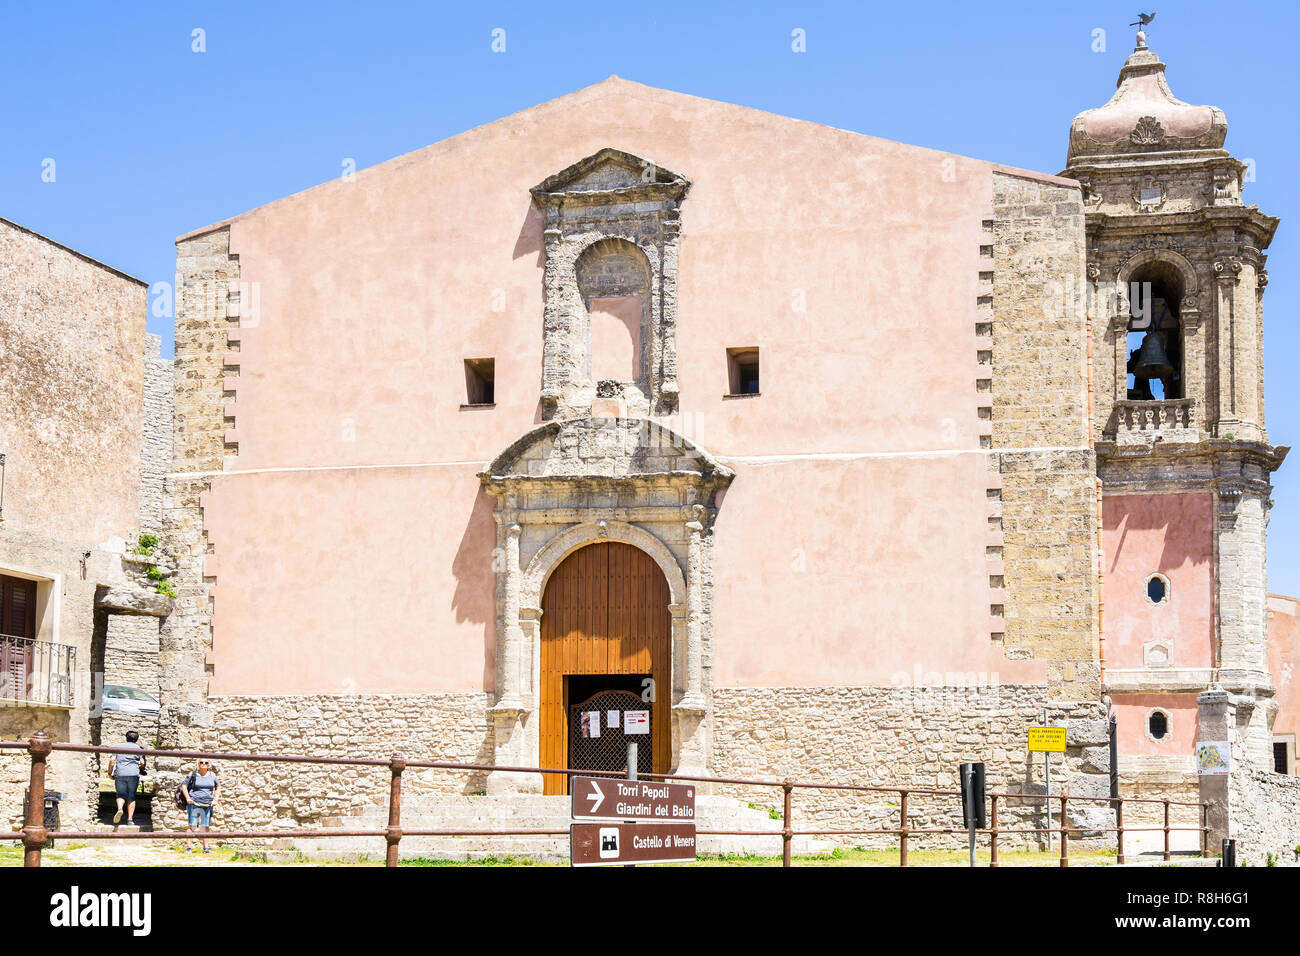 San Giuliano è su della più antica chiesa di Erice, costruita nel 1074 durante il periodo Normanno. Erice, in Sicilia, in provincia di Trapani, Italia, Aprile 2018 Foto Stock